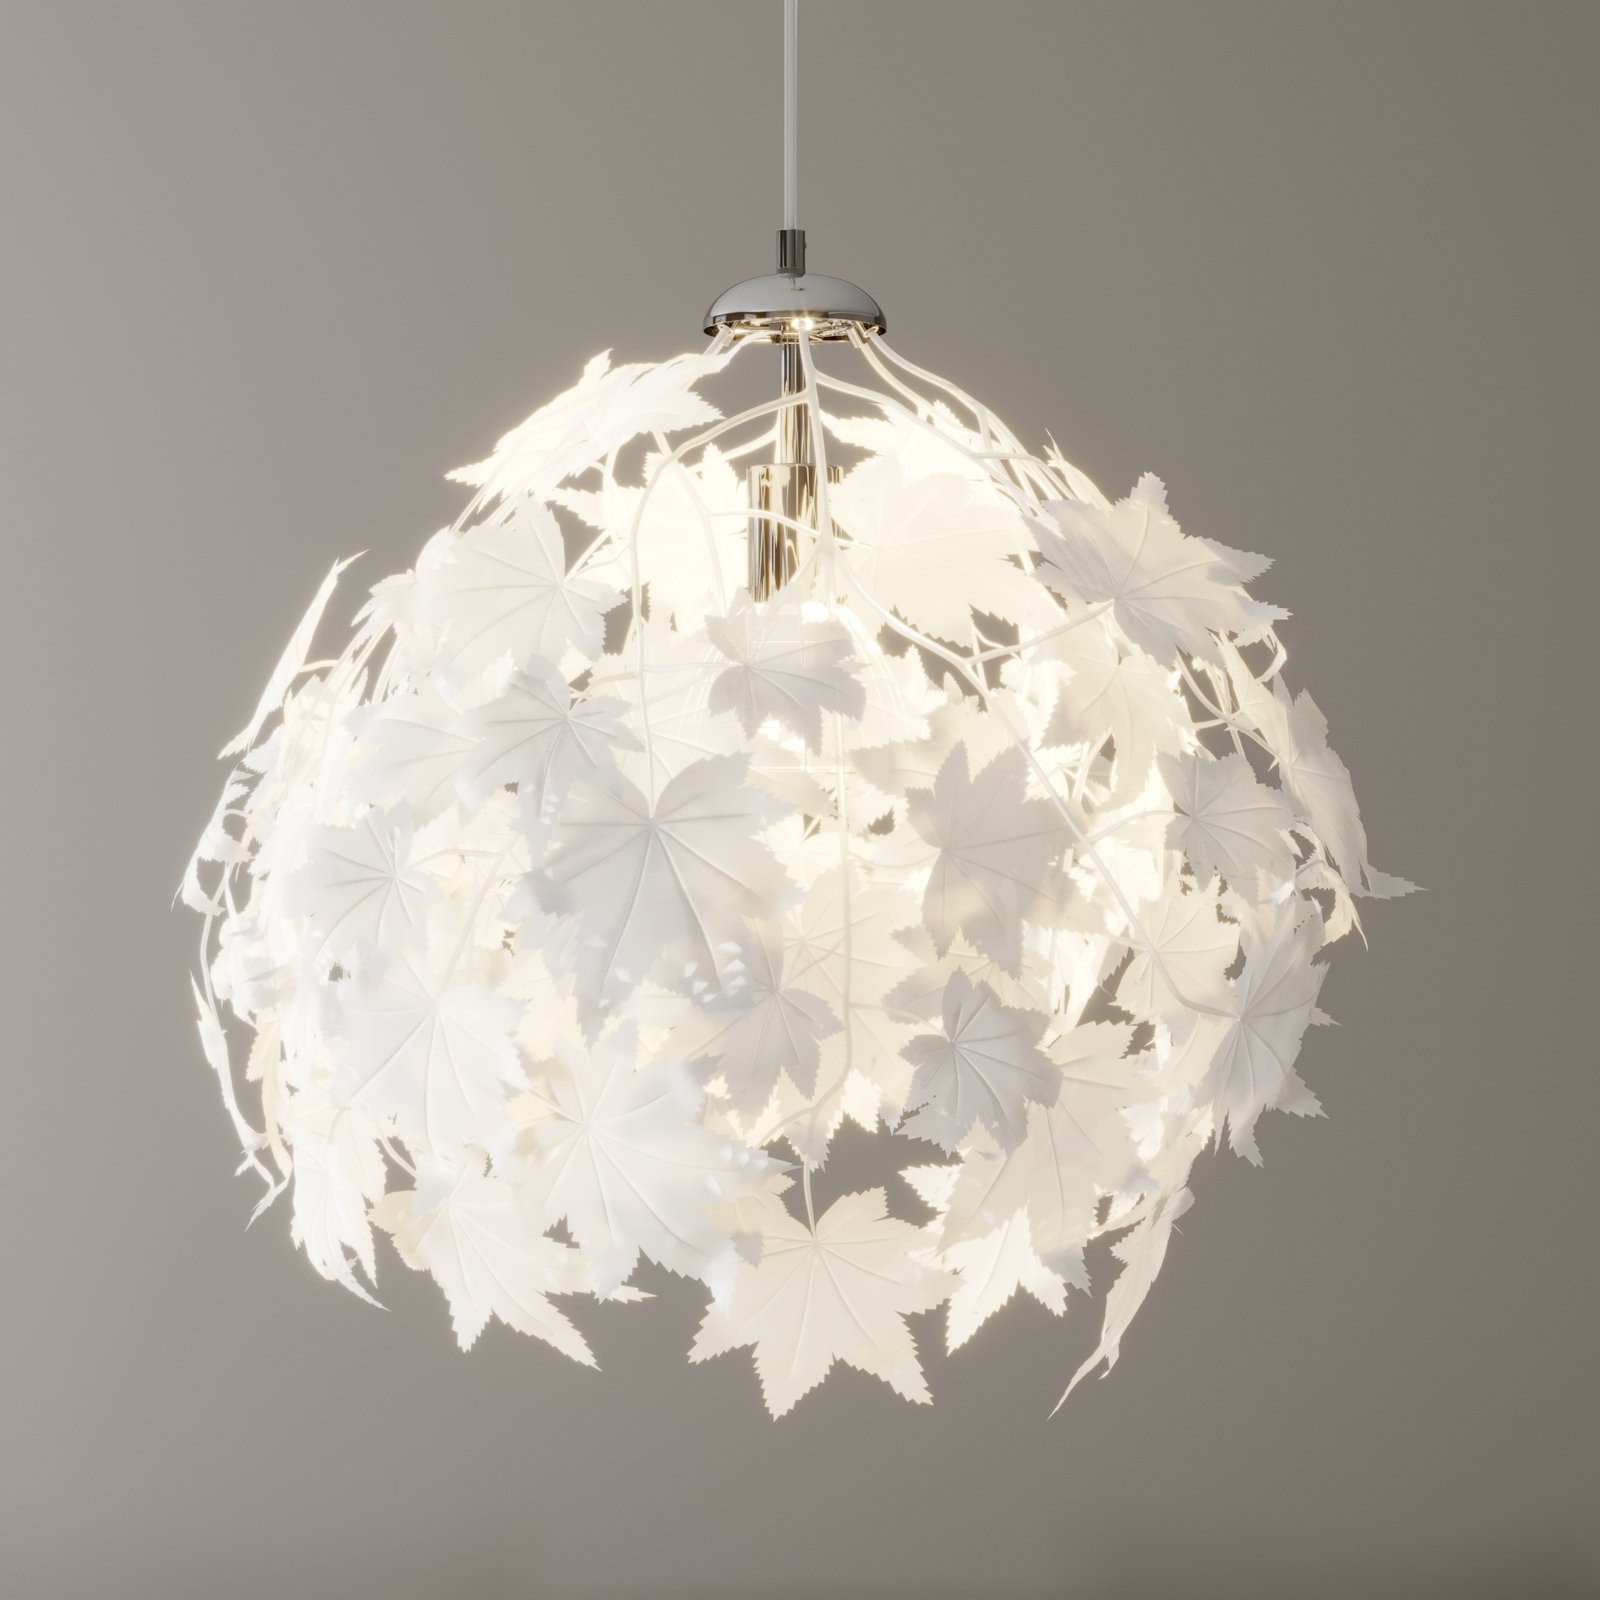 Závěsná lampa Maple ve vzhledu listí, 38 cm